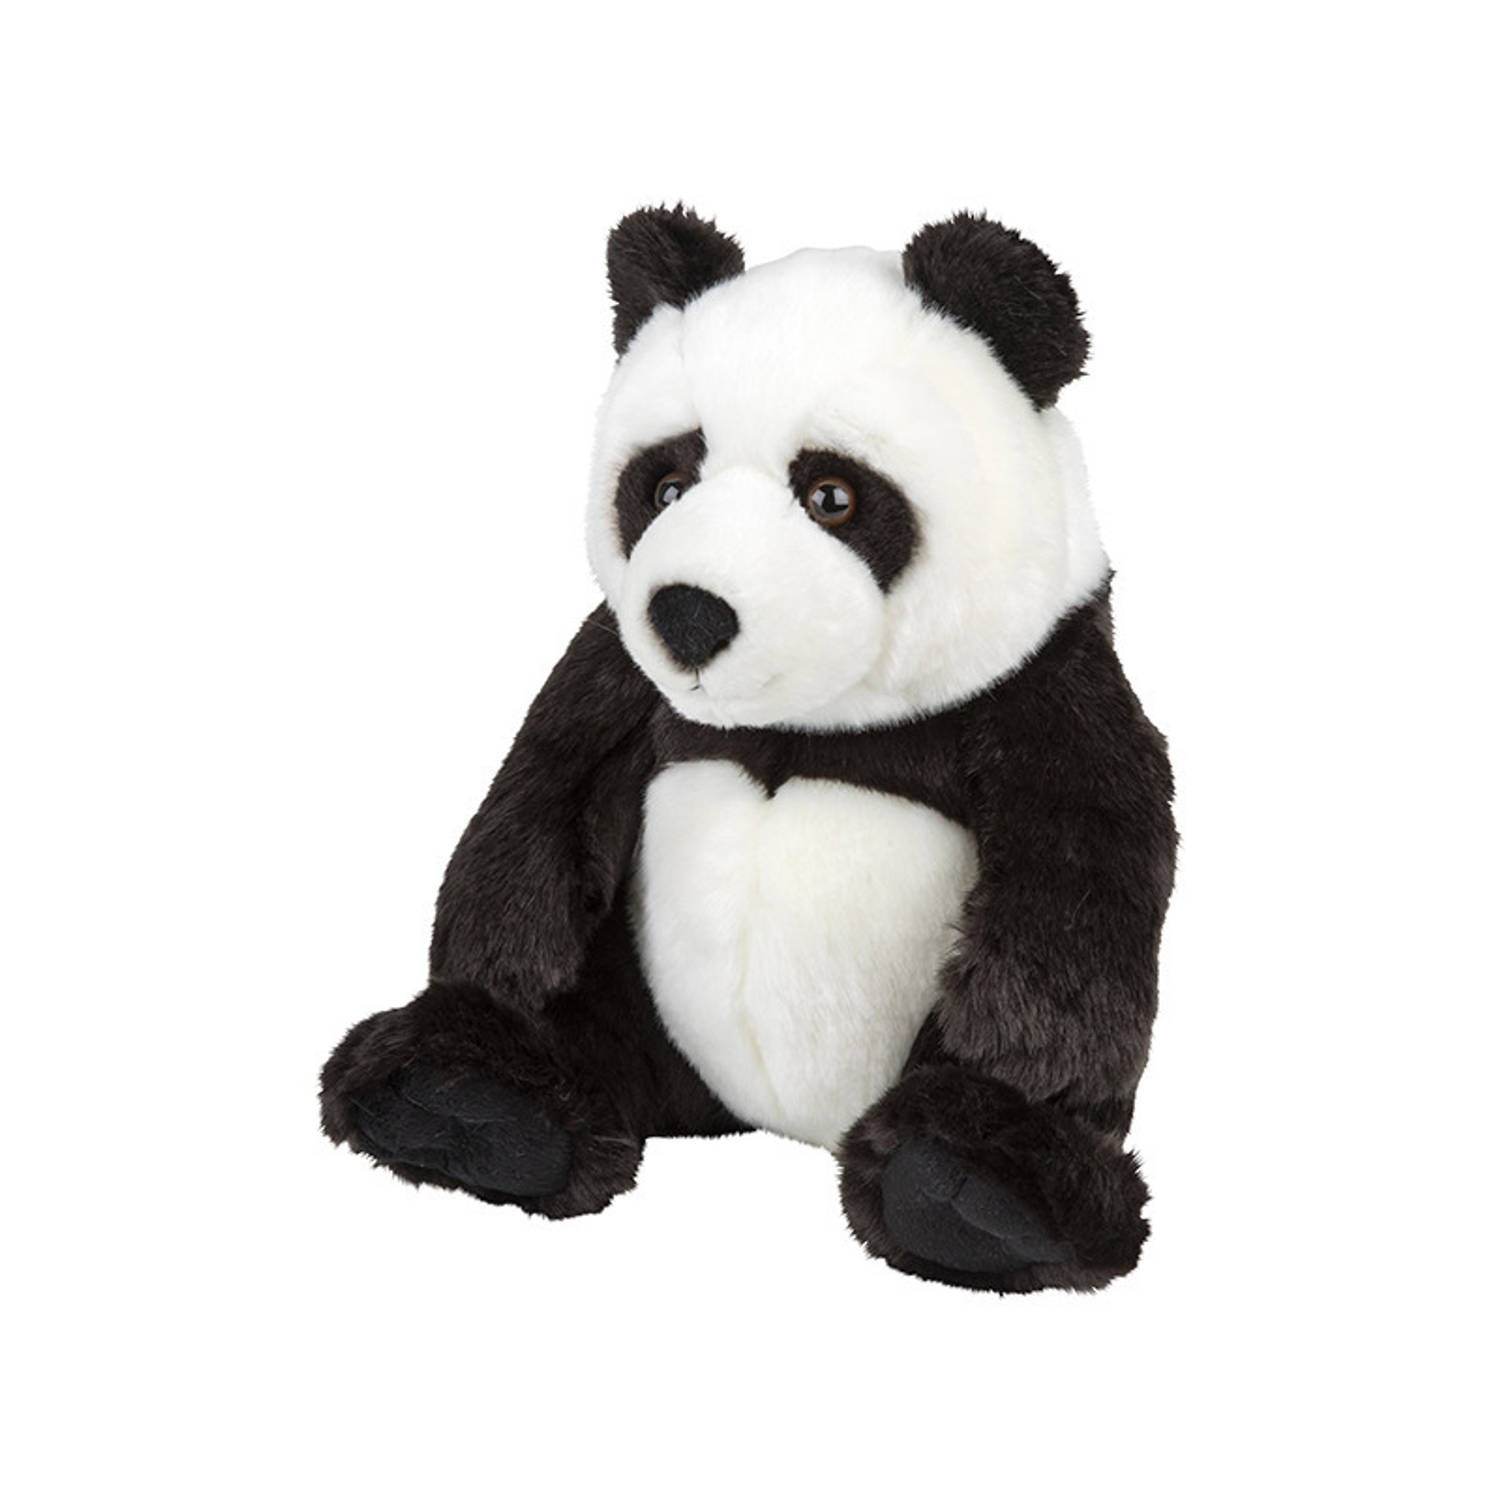 Pluche Panda knuffeldier van 25 cm - Speelgoed dieren knuffels cadeau voor kinderen